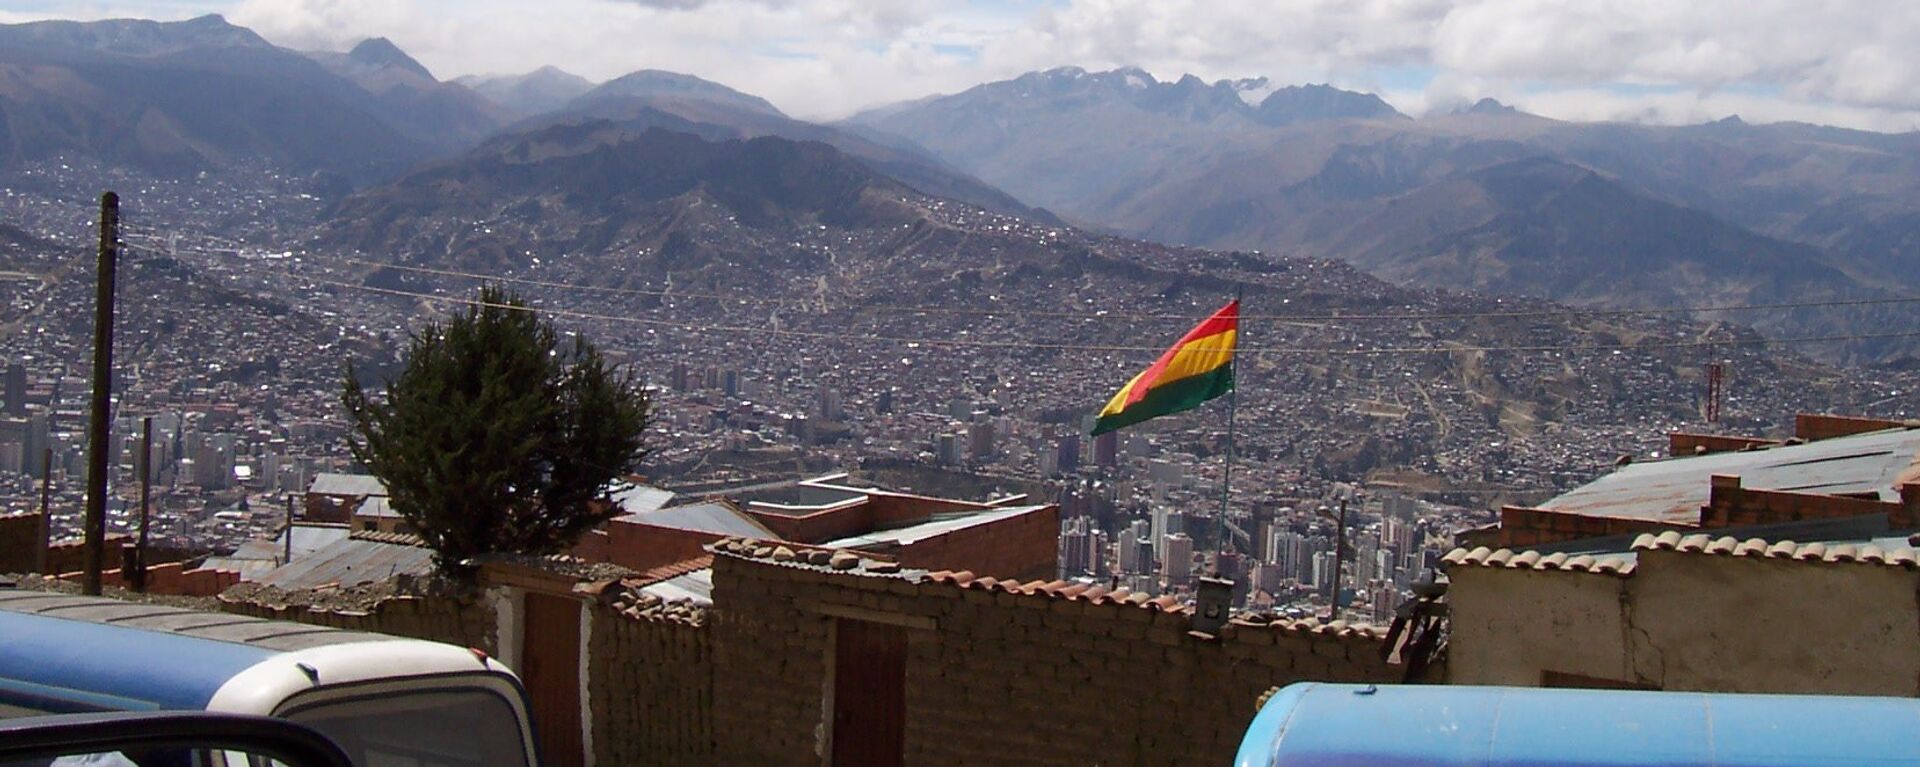 Bandera de Bolivia - Sputnik Mundo, 1920, 22.12.2021